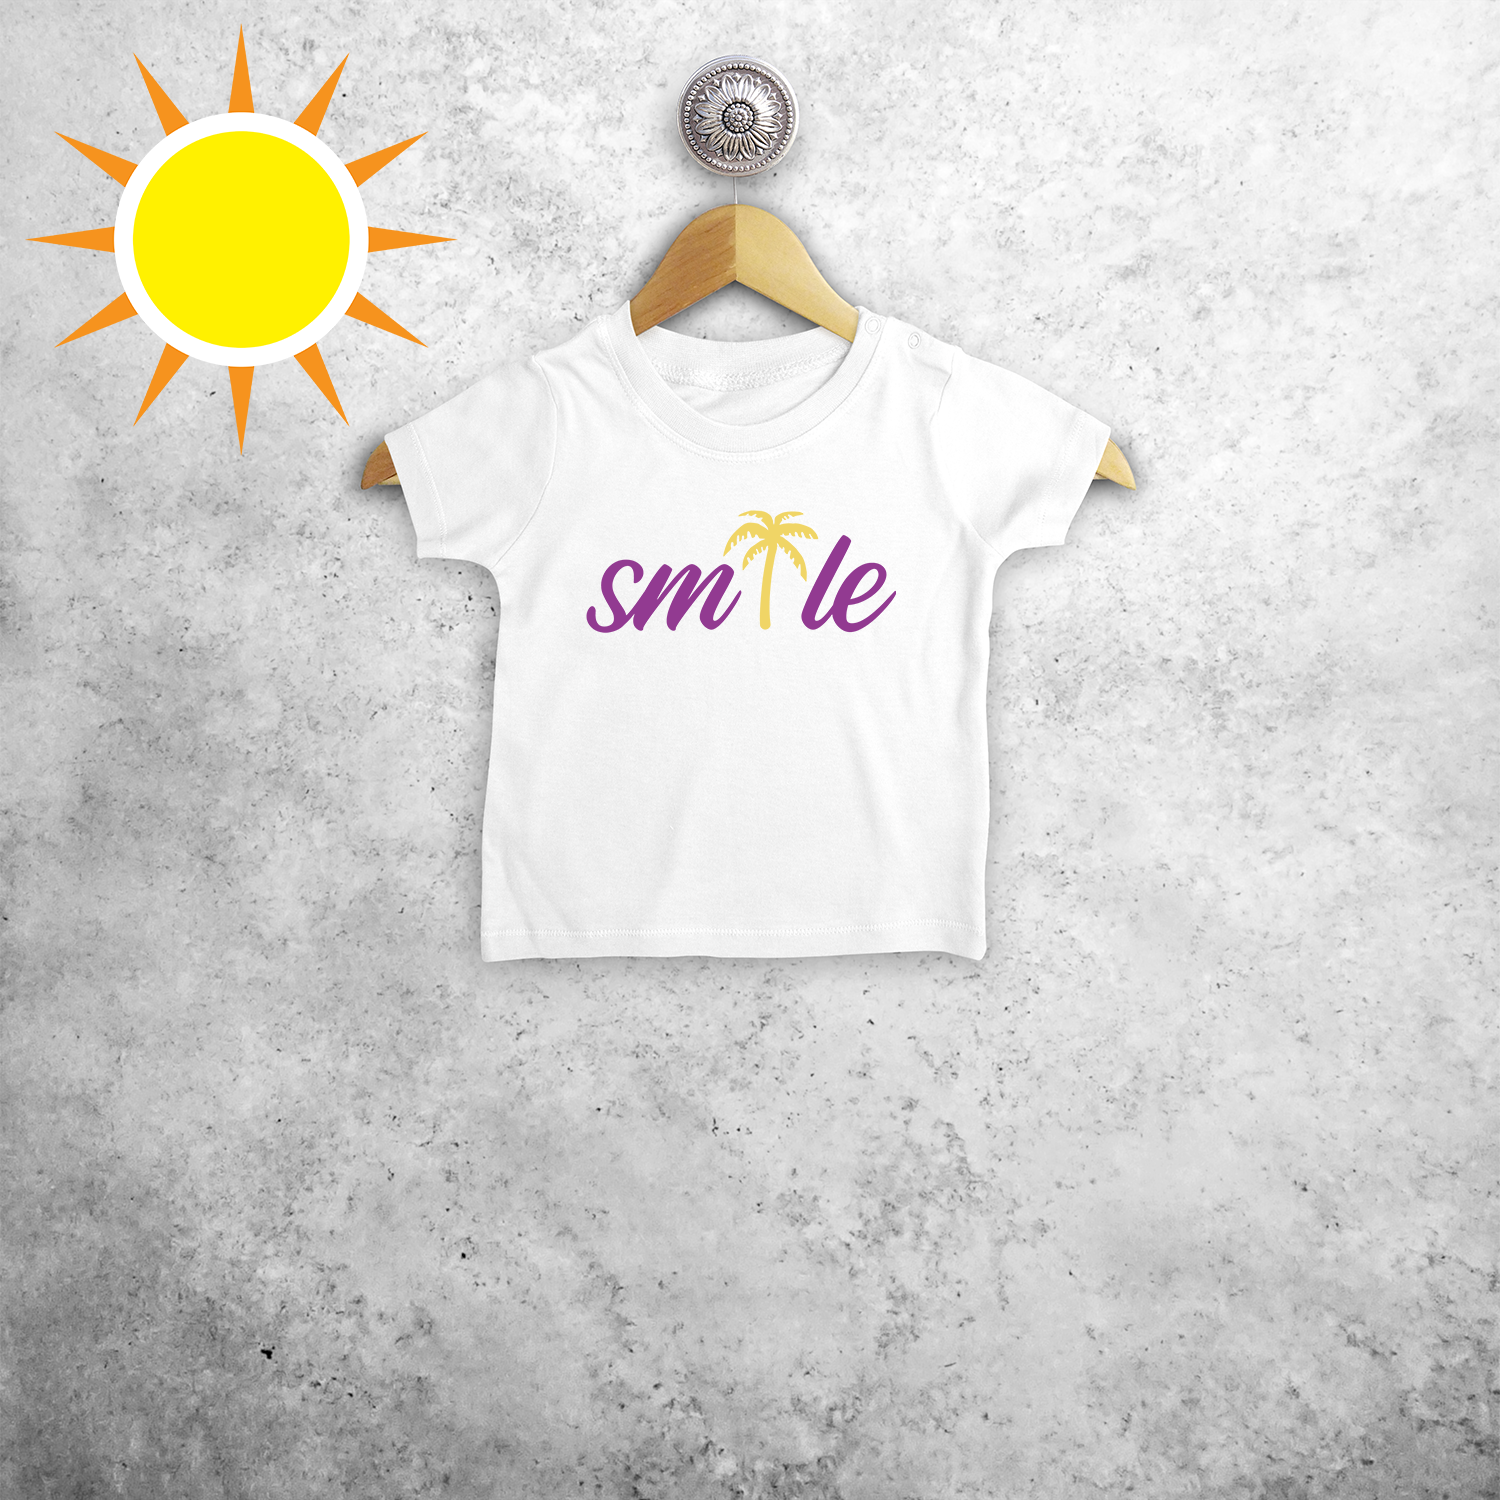 Smile' magisch baby shirt met korte mouwen